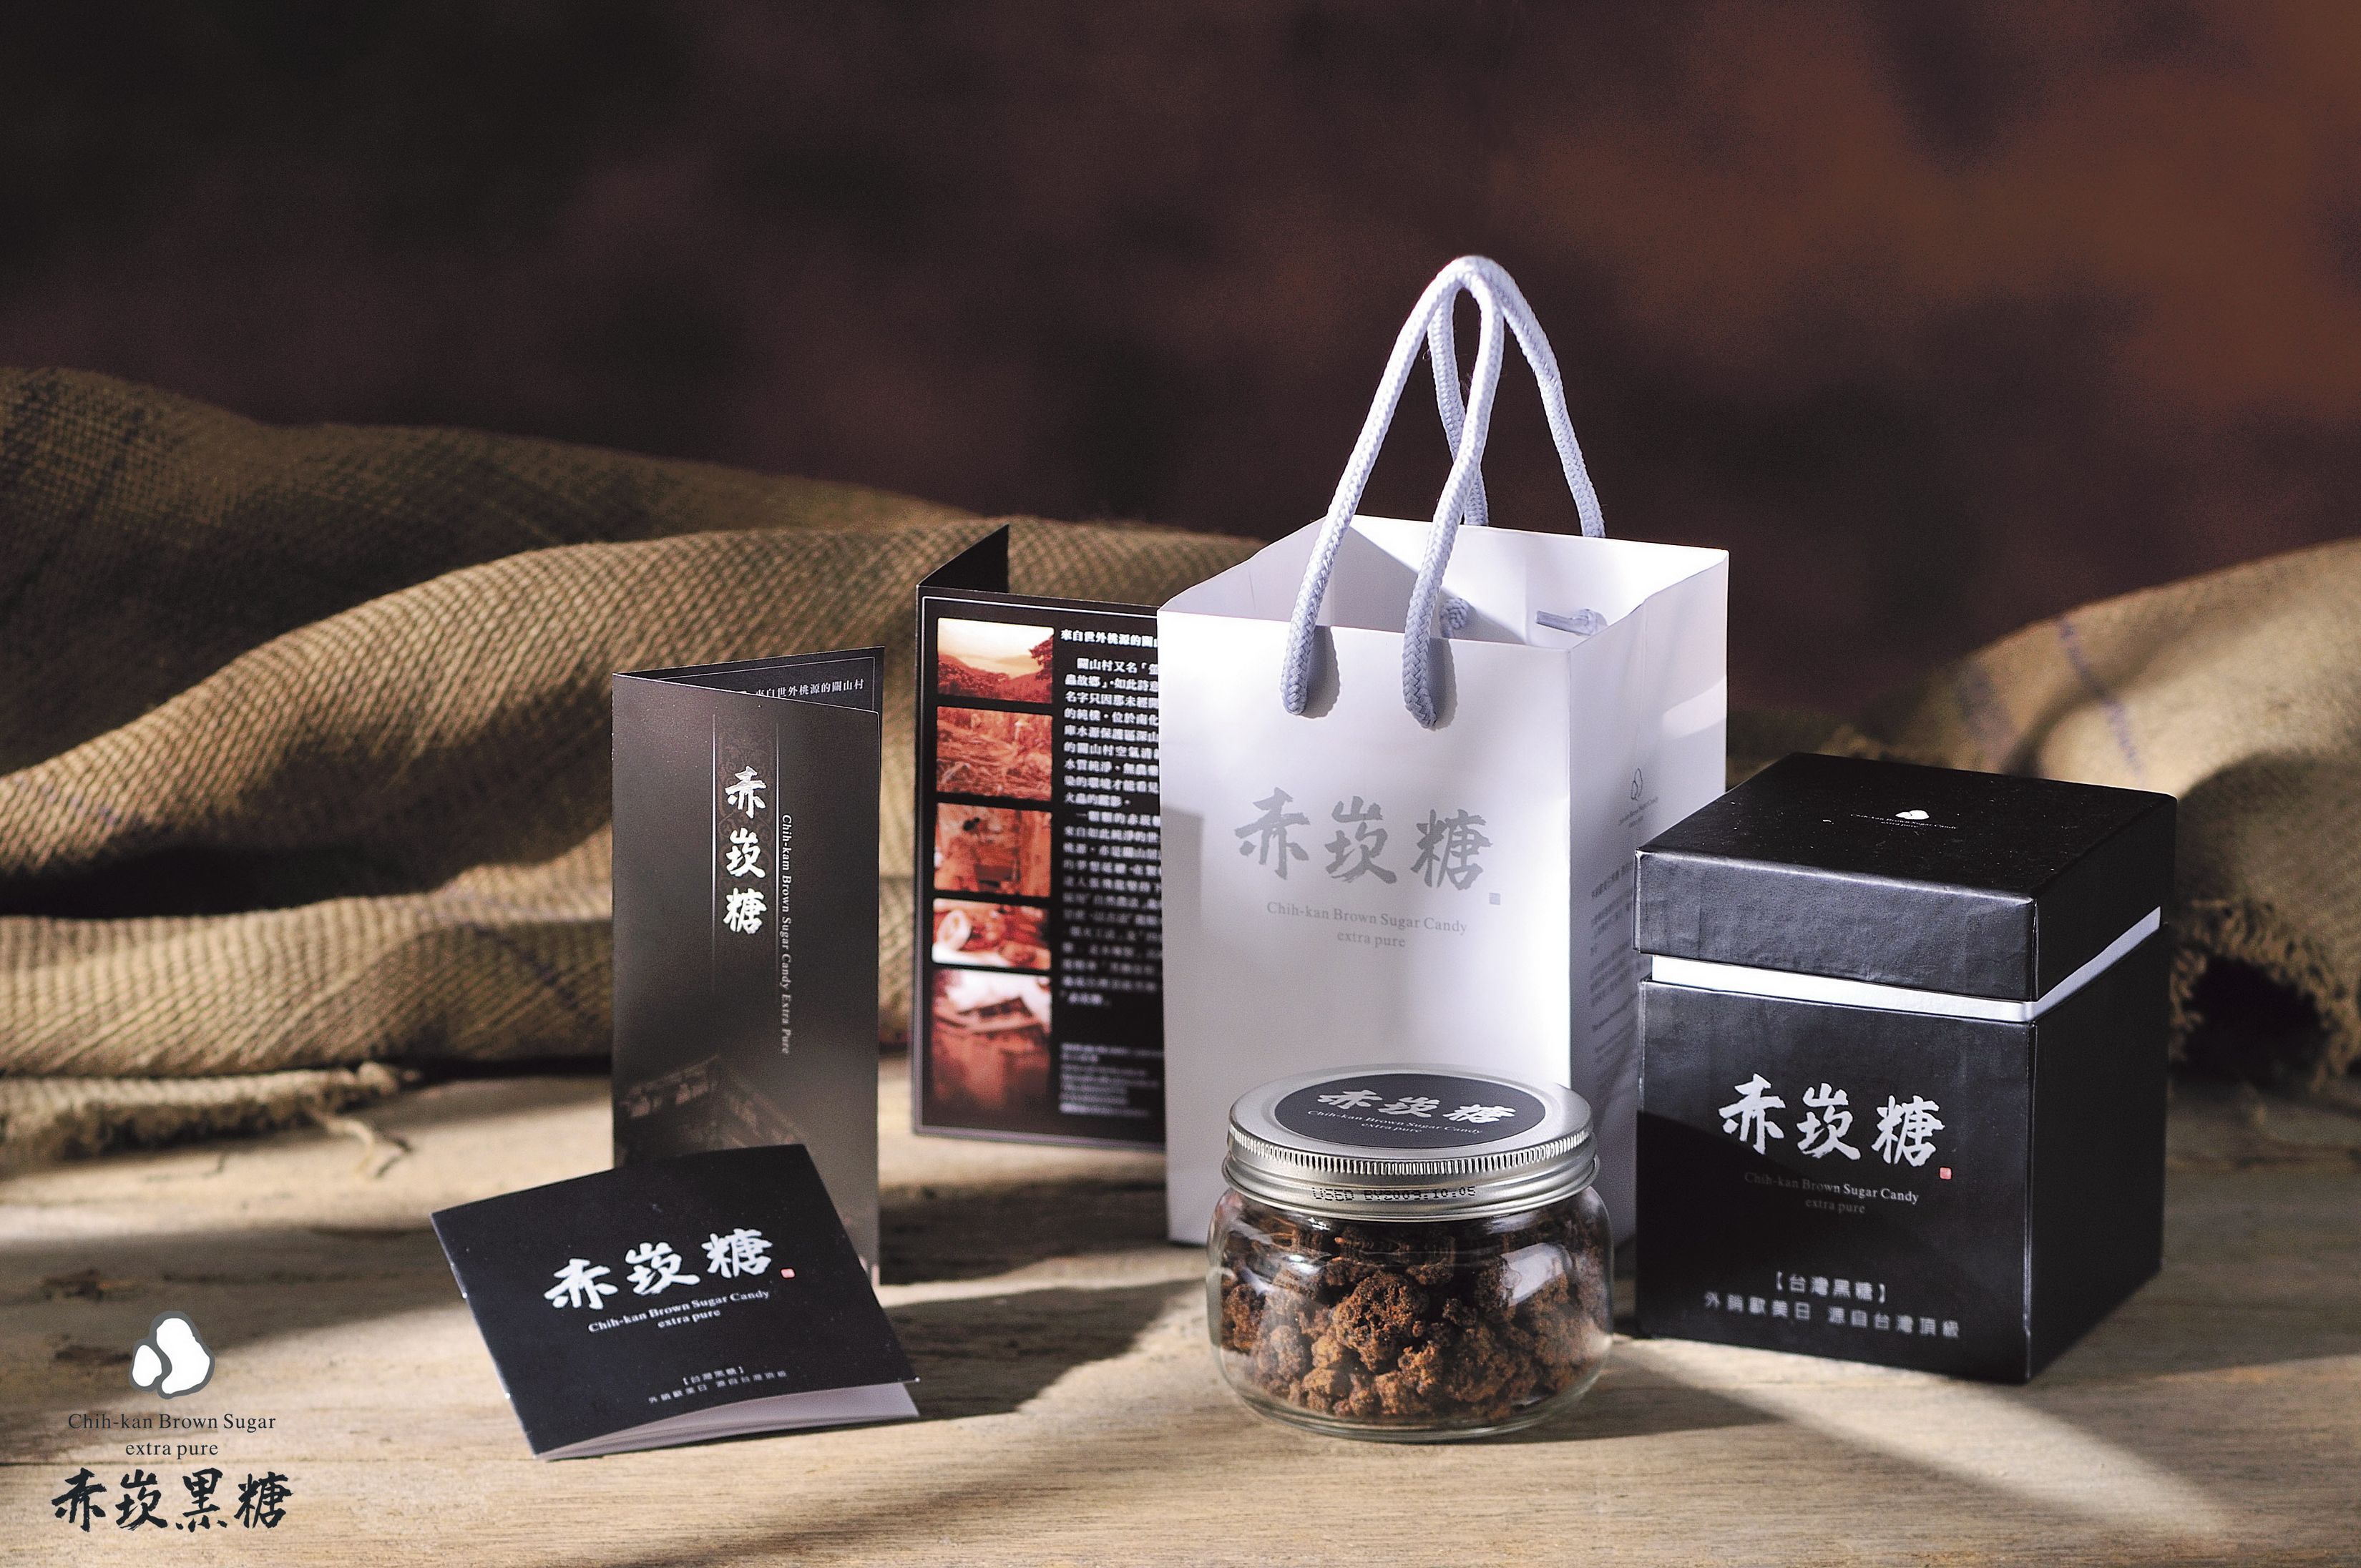 赤崁糖禮盒兼具文化意涵與產品特色。